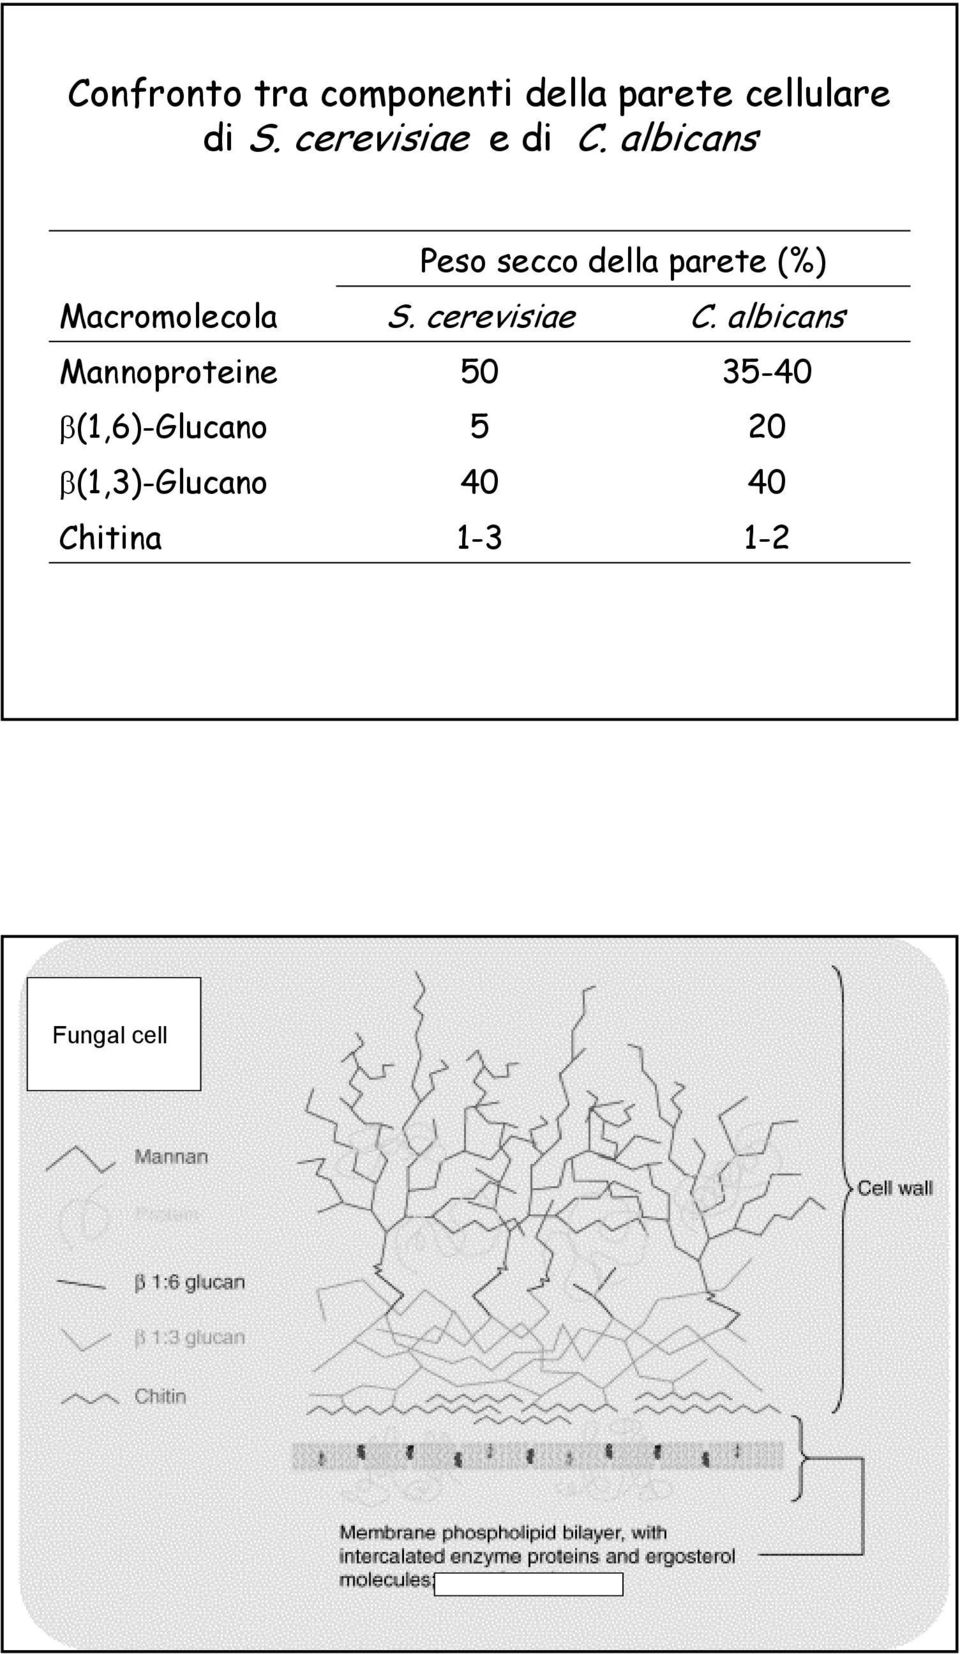 albicans Macromolecola Mannoproteine β(1,6)-glucano